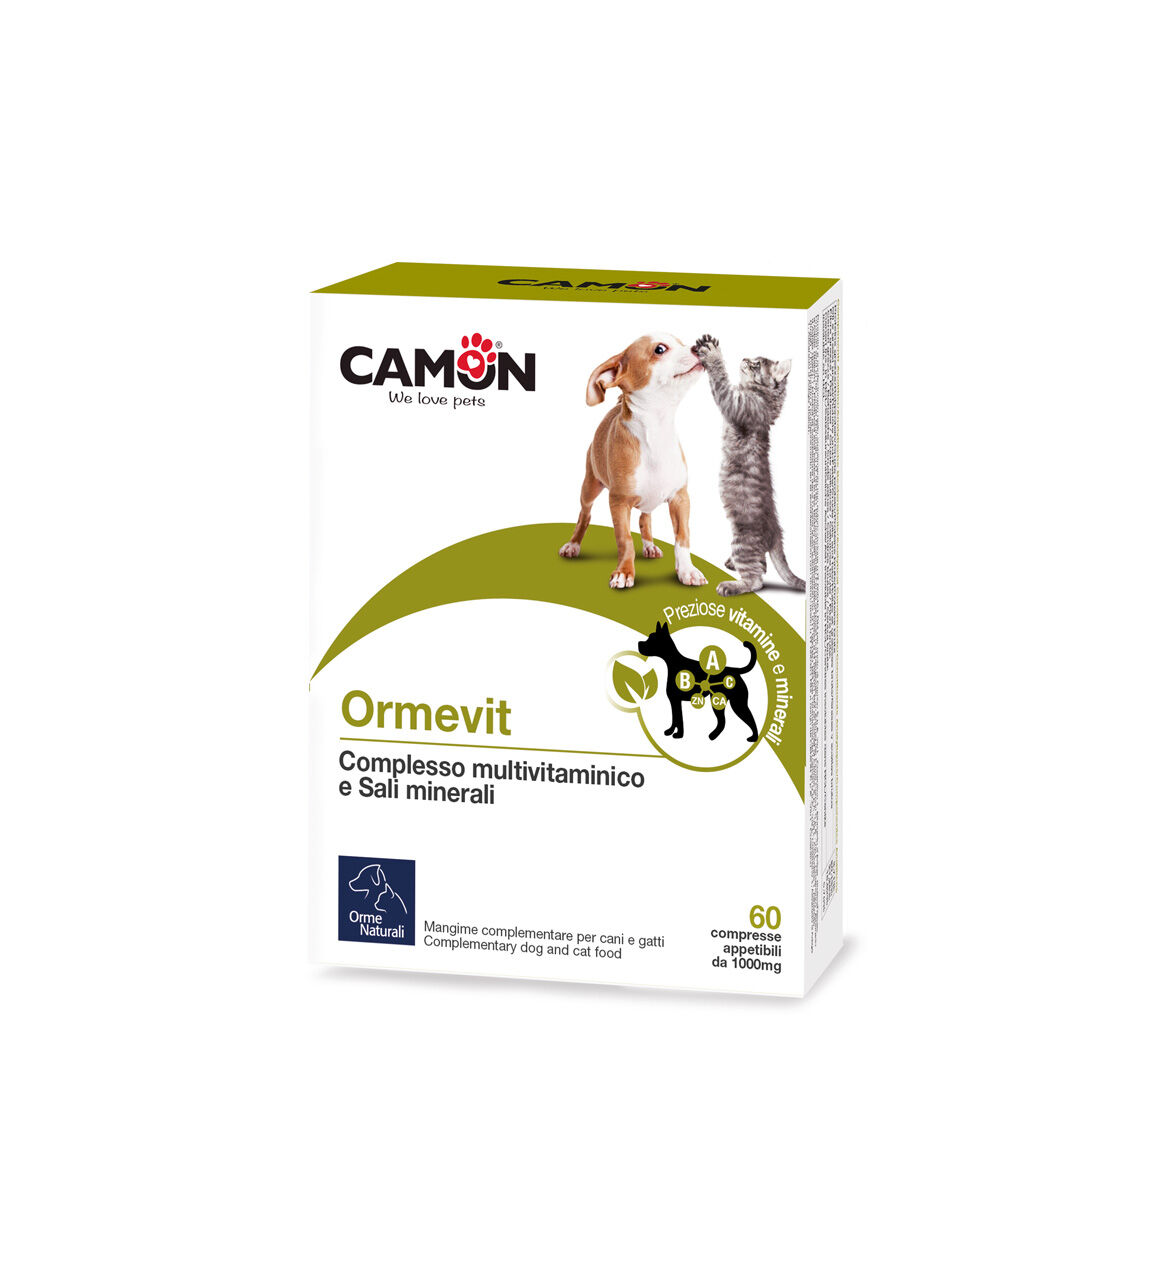 Camon-Ormevit-fuer-Hund-Katze-Minearlien-Vitamine-Aminosaeuren-CO-G887